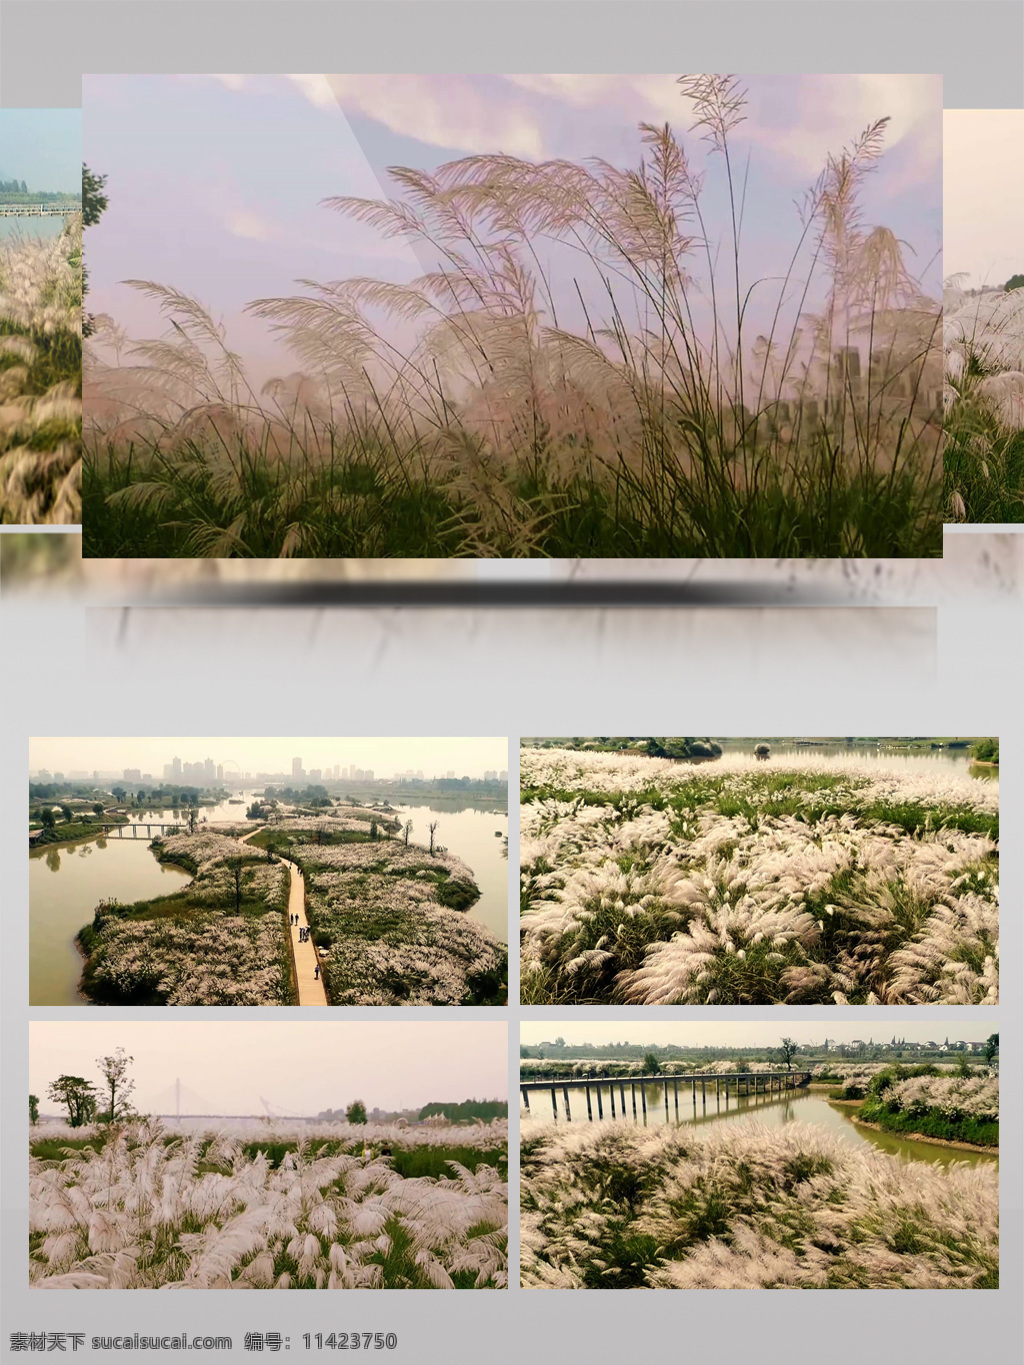 汉江 湿地 公园 芦苇 花开 自然 春天 风景 环保 超清 美景 风光 生态 美丽 环境 实拍 视频